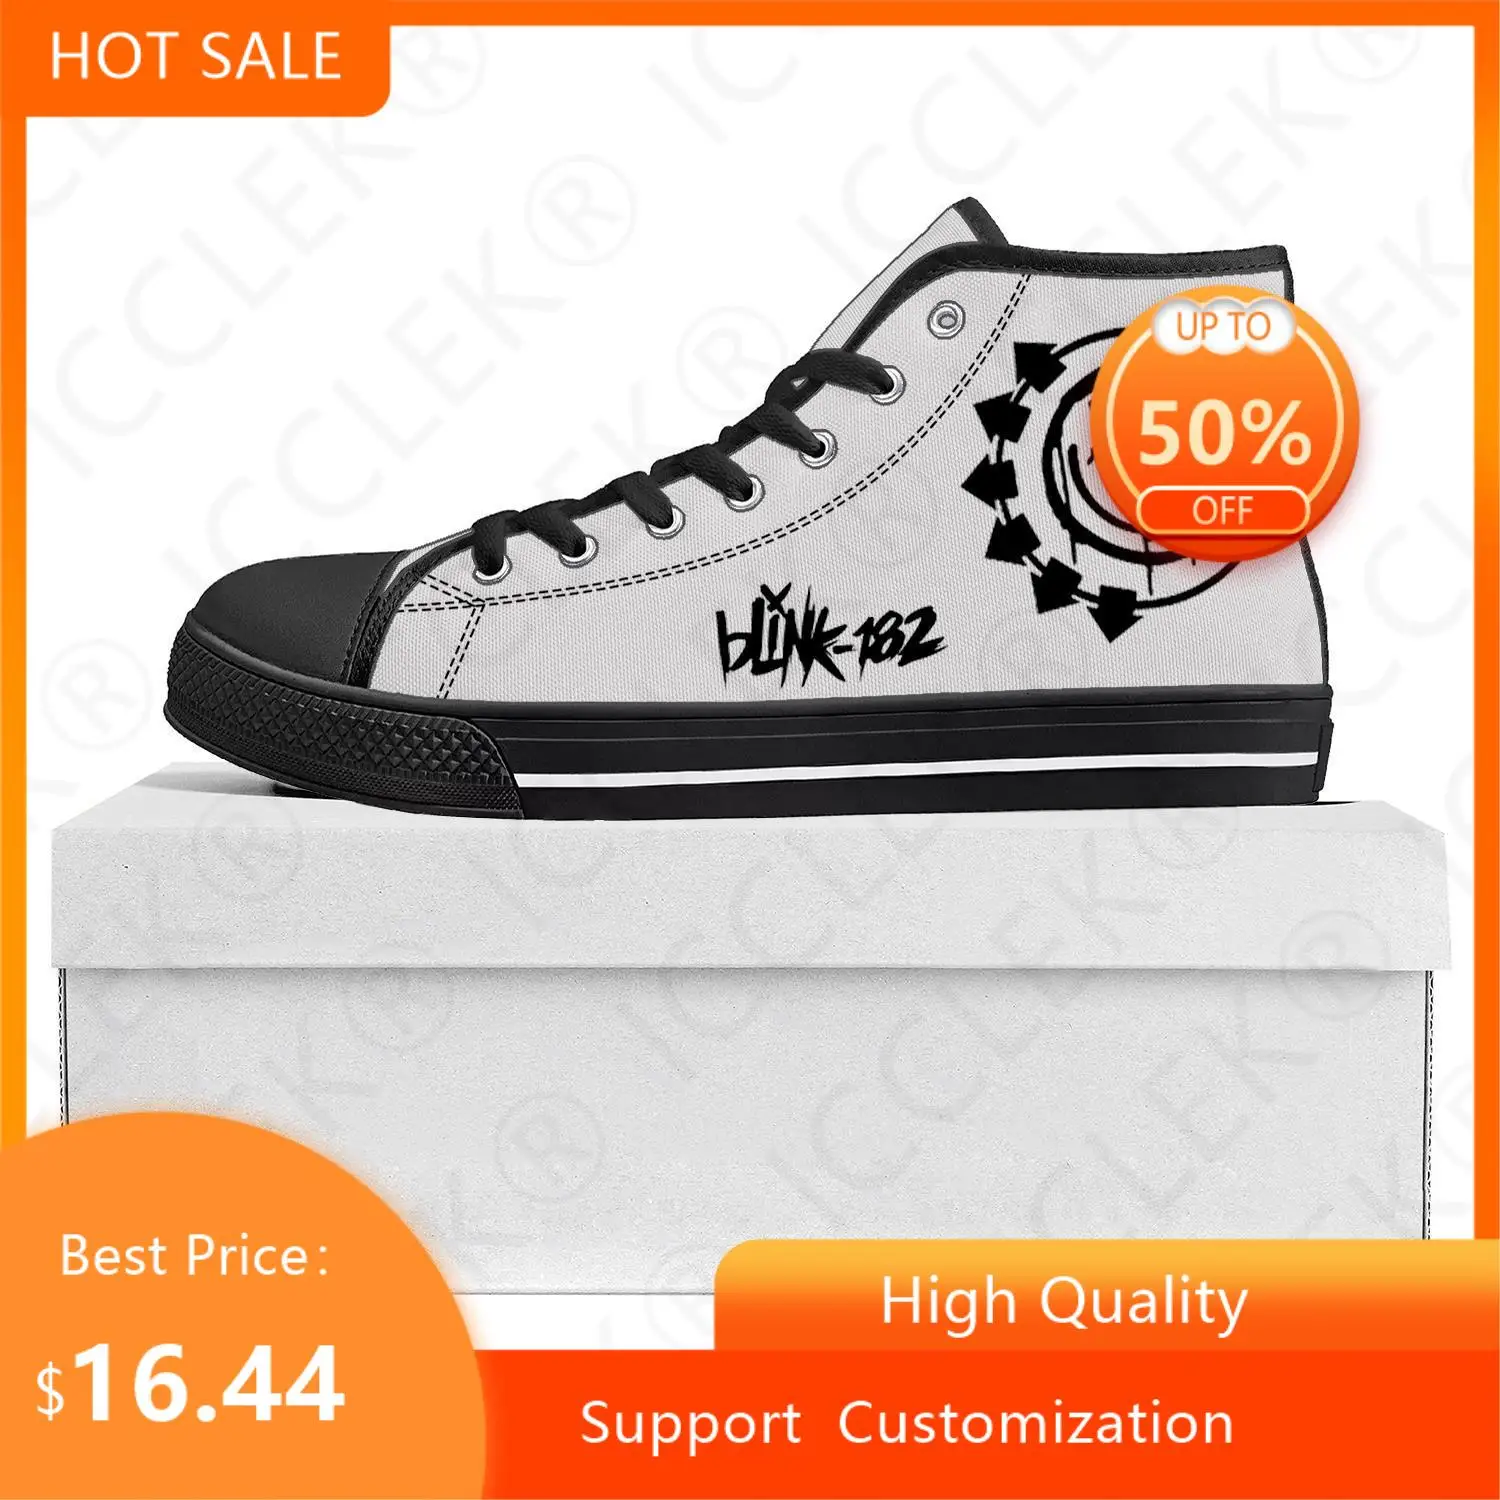 

Blink-182 популярность панк рок группа высокие высококачественные кроссовки Мужские Женские подростковые холщовые кроссовки пара обуви на заказ